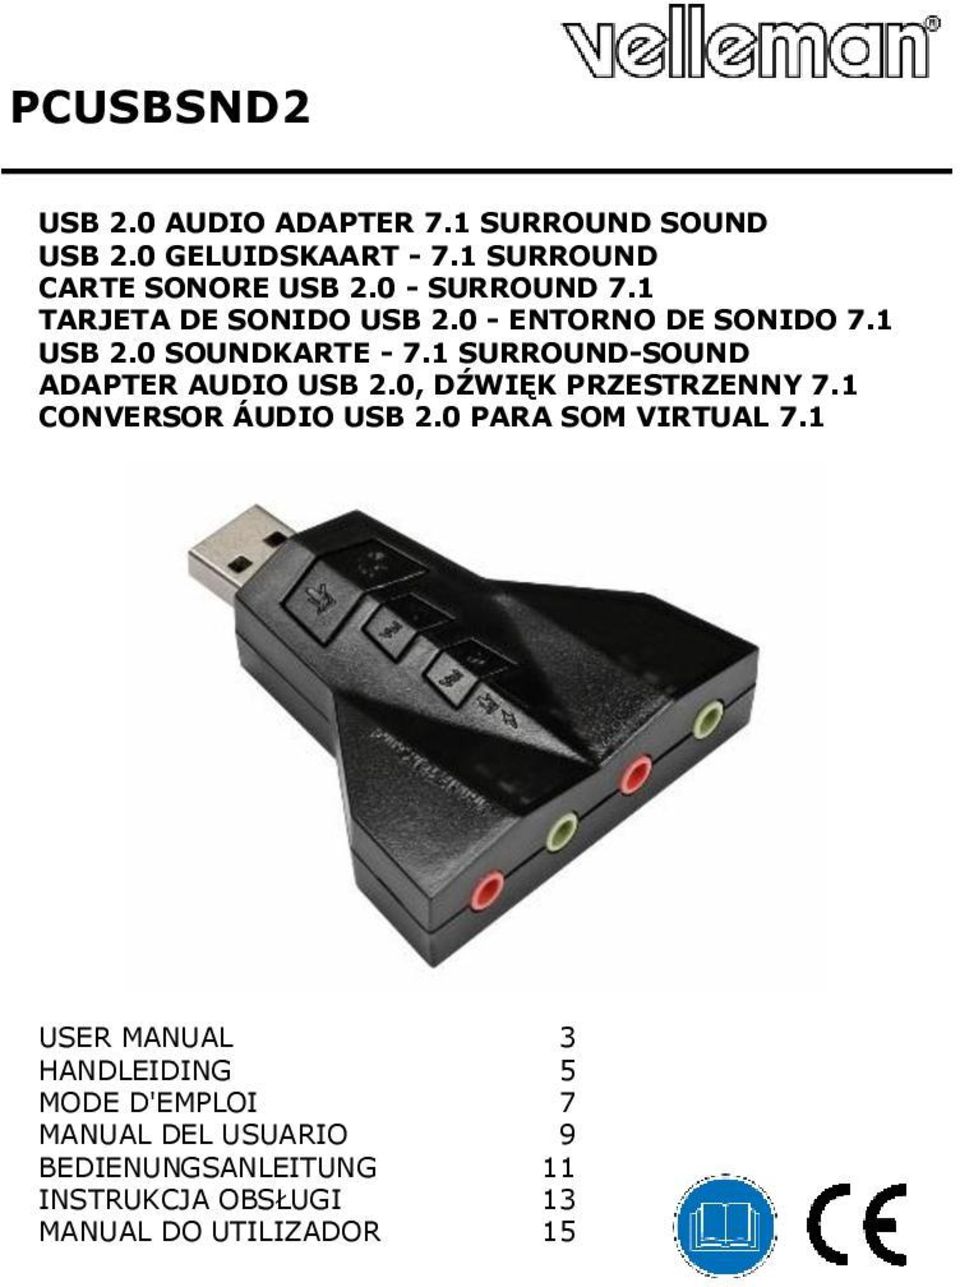 1 SURROUND-SOUND ADAPTER AUDIO USB 2.0, DŹWIĘK PRZESTRZENNY 7.1 CONVERSOR ÁUDIO USB 2.0 PARA SOM VIRTUAL 7.